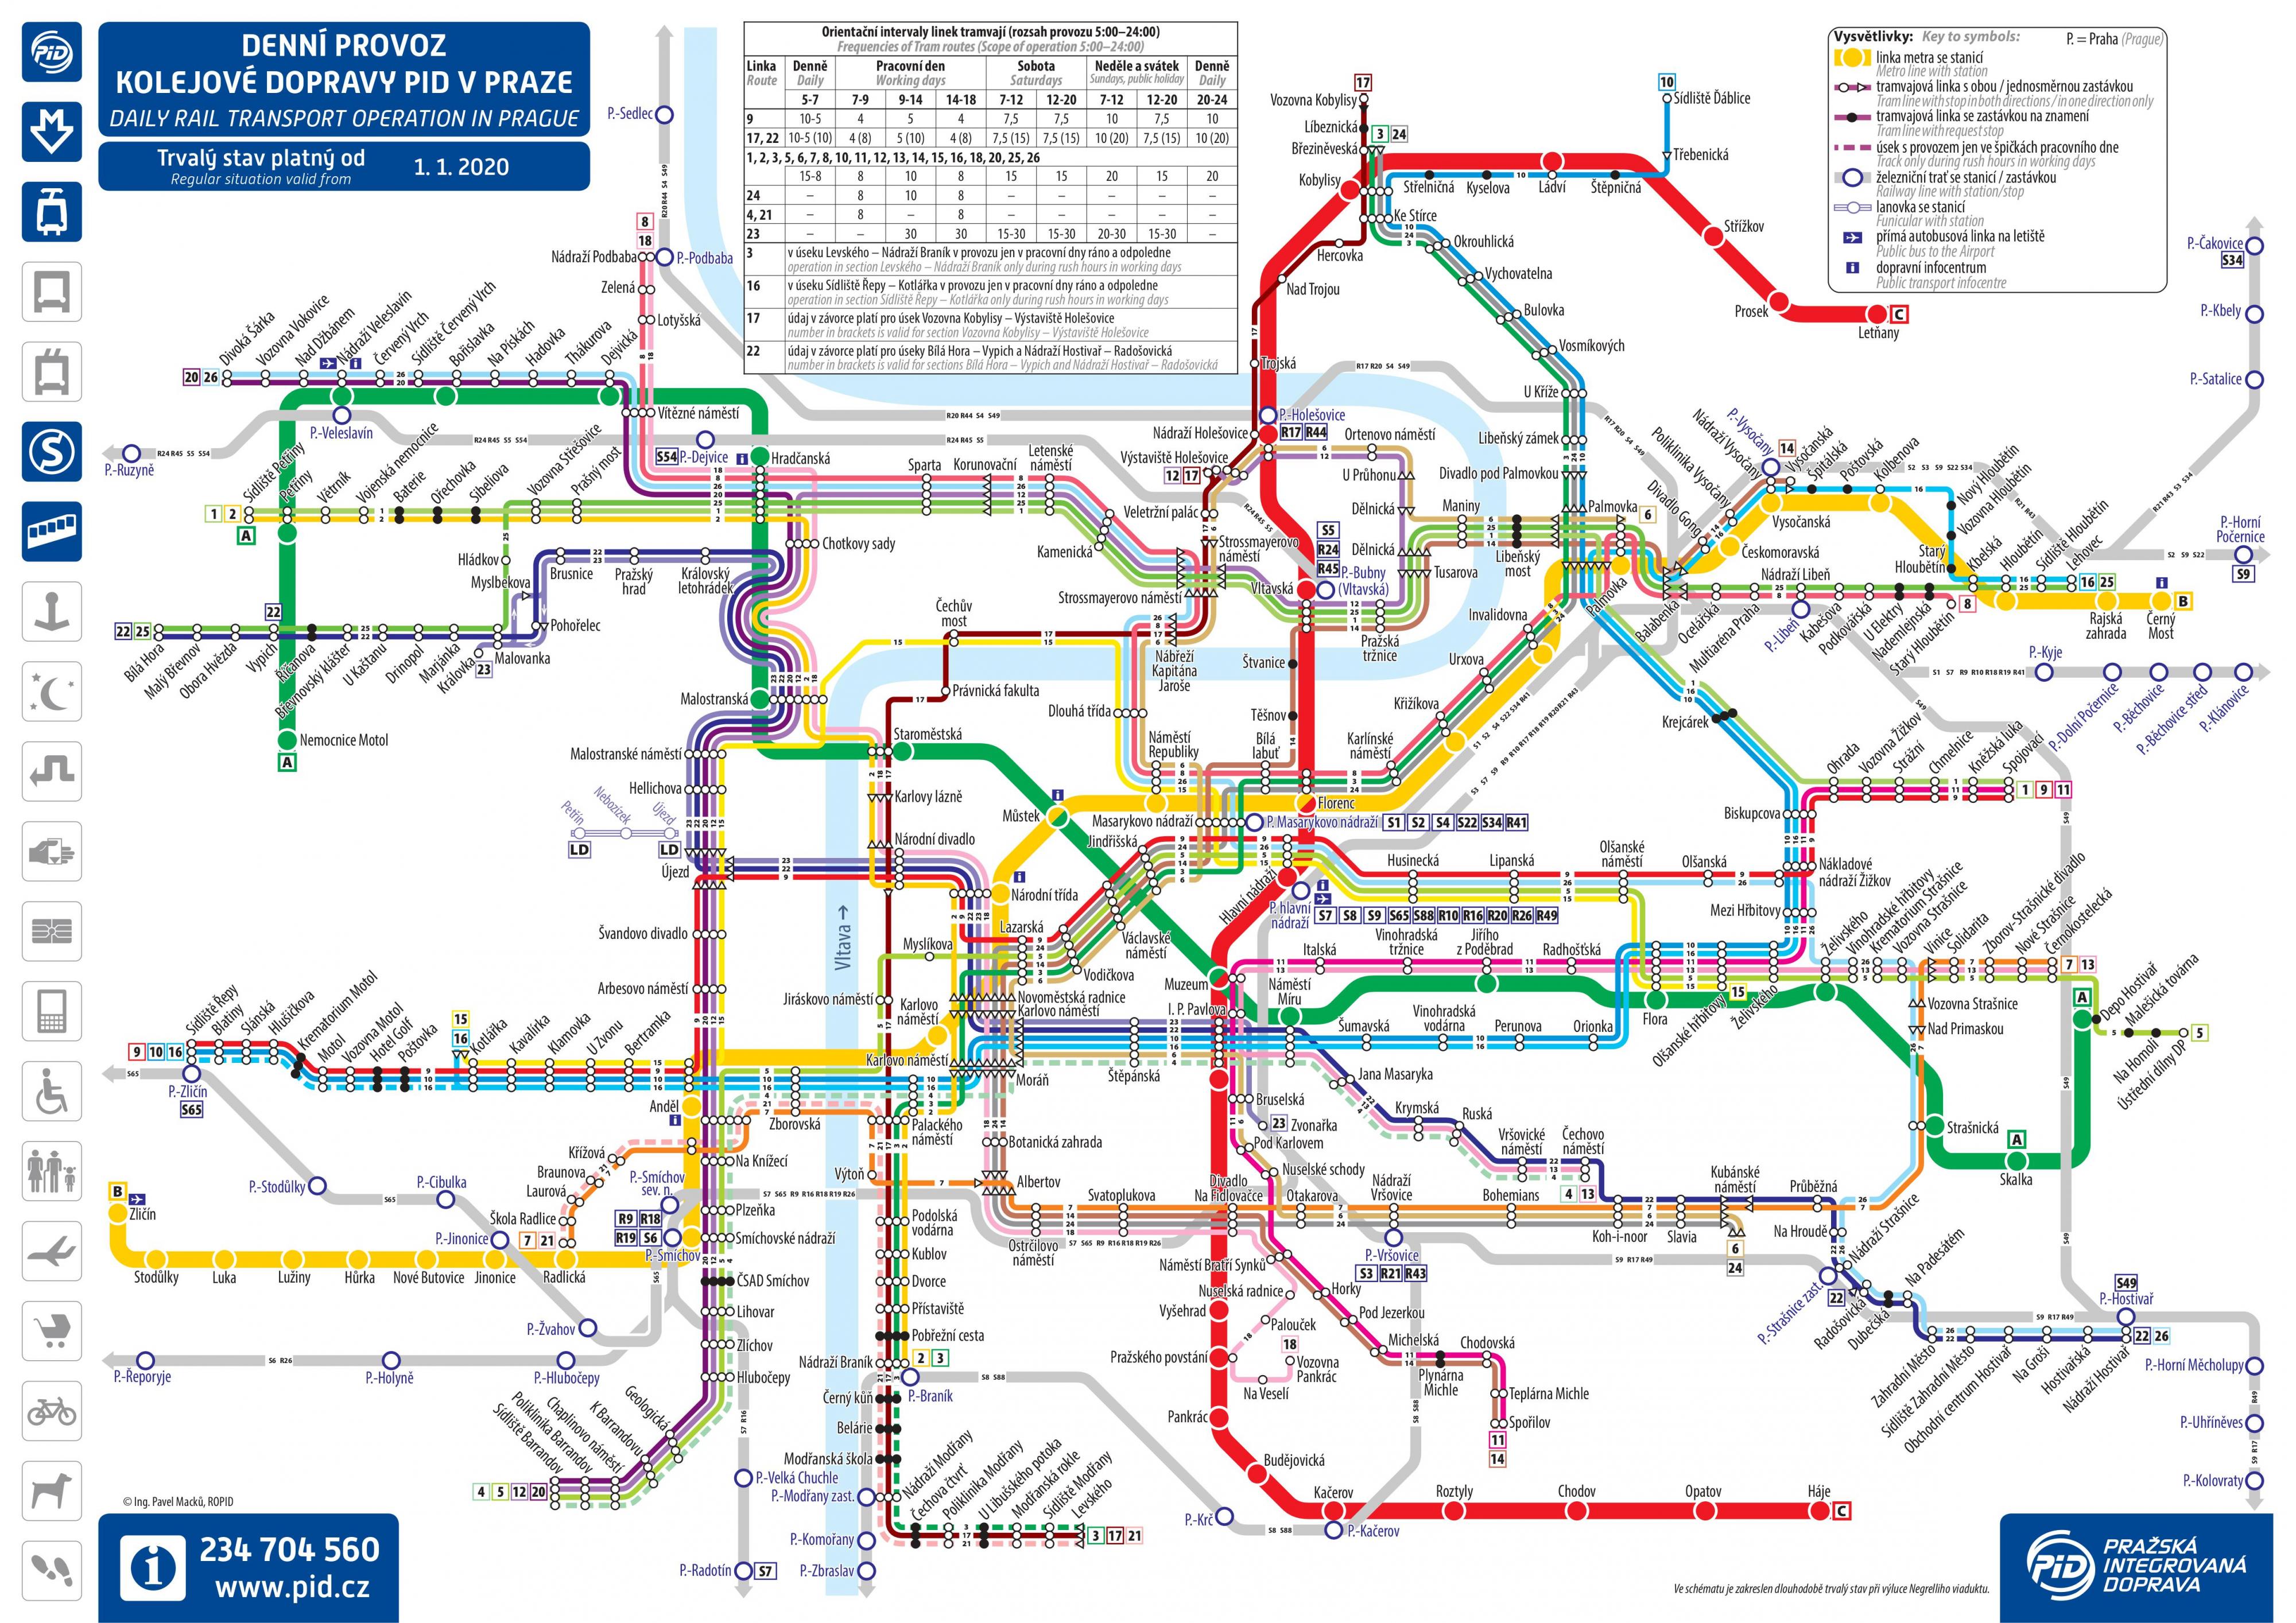 Mapa del tren de Praga